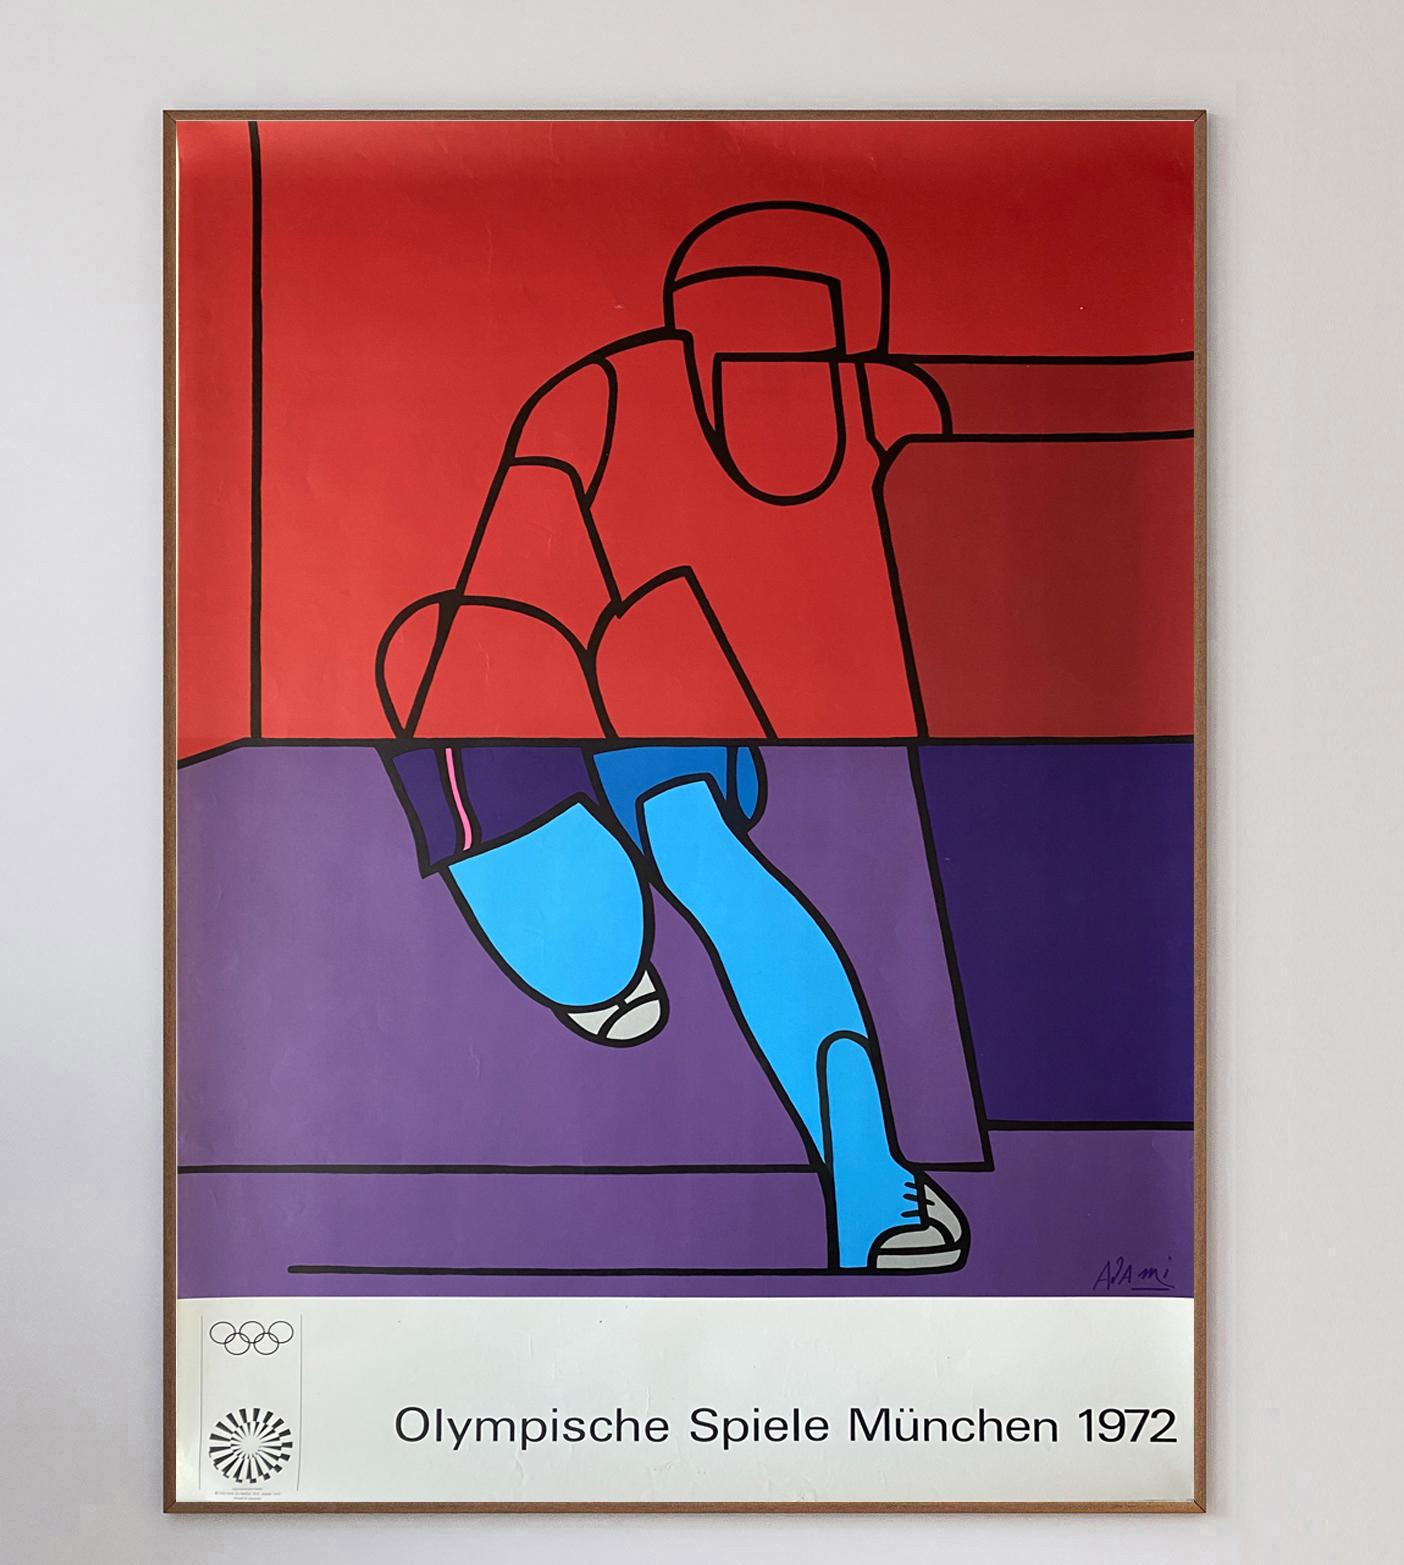 Der italienische Maler Valerio Adami war einer von 29 Künstlern, die mit der Gestaltung von Plakaten für die Olympischen Spiele 1972 in München beauftragt wurden. Im Vorfeld der Spiele 1972 beschloss das Organisationskomitee, eine Reihe von